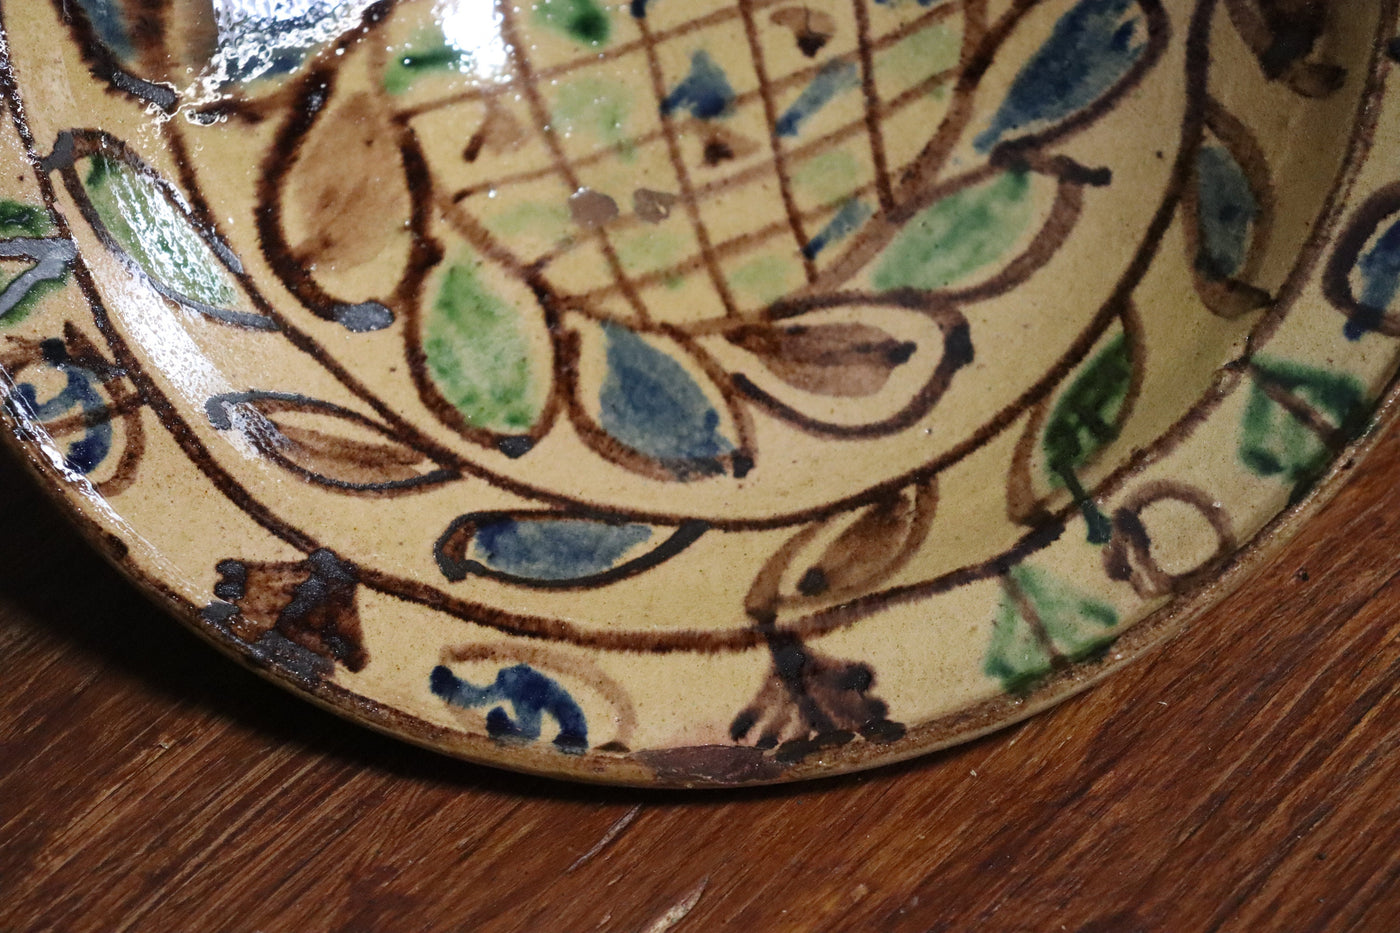 1 Stück seltener handgefertigt islamische Tonschalen Töpferschale Teller Keramik aus  Swat-Tal Pakistan und Südafghanistan Nr. 22/8 Keramik Orientsbazar   